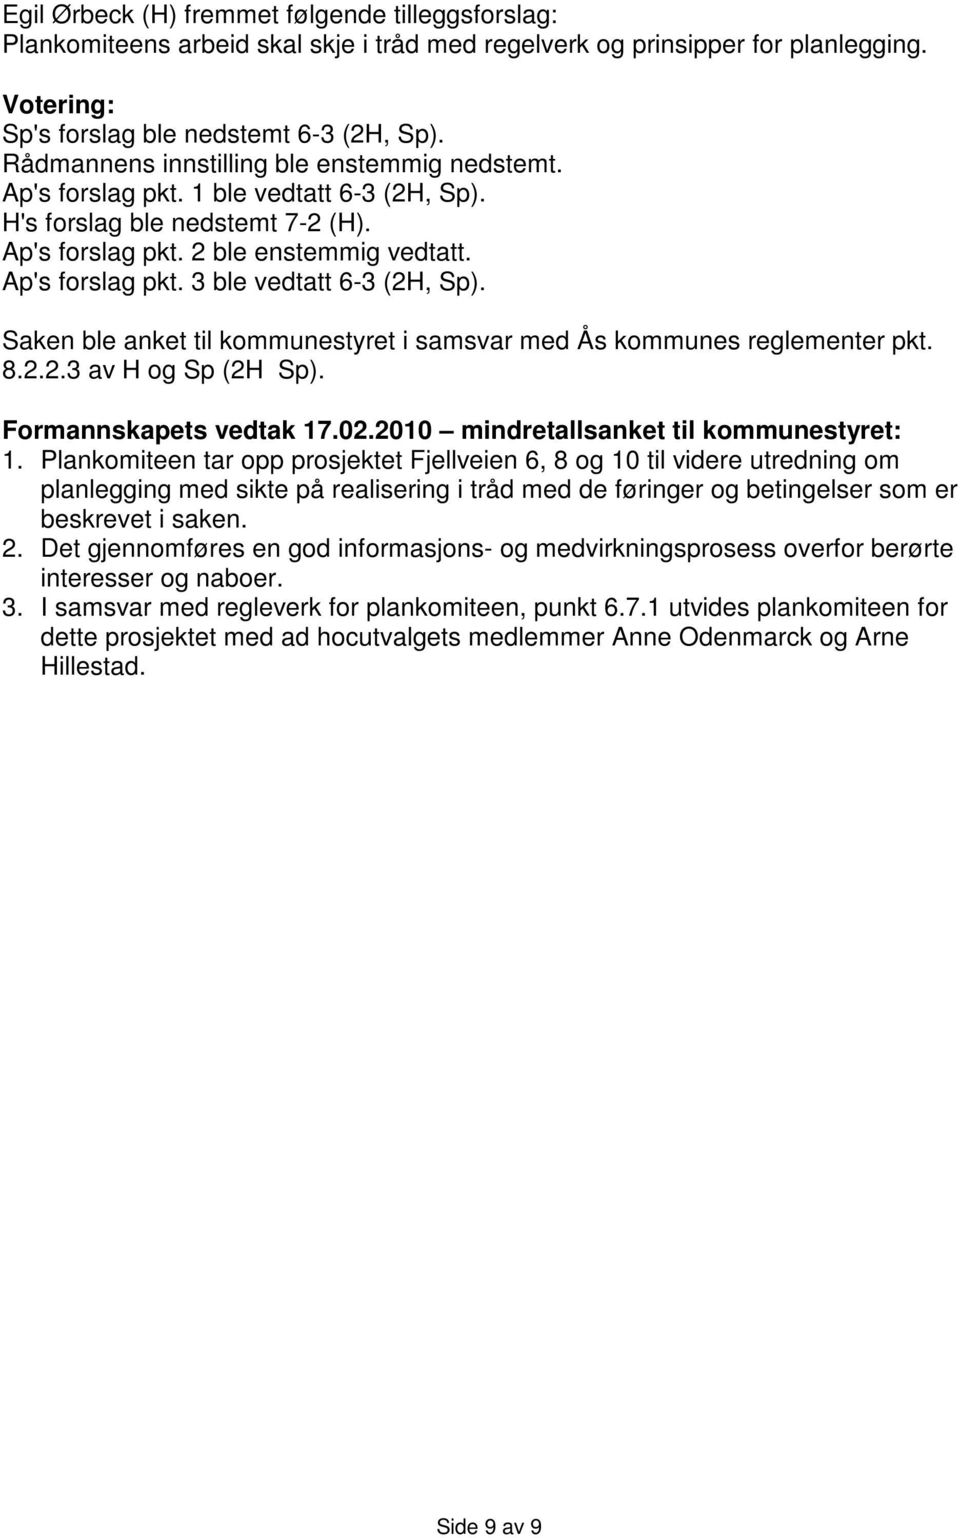 Saken ble anket til kommunestyret i samsvar med Ås kommunes reglementer pkt. 8.2.2.3 av H og Sp (2H Sp). Formannskapets vedtak 17.02.2010 mindretallsanket til kommunestyret: 1.